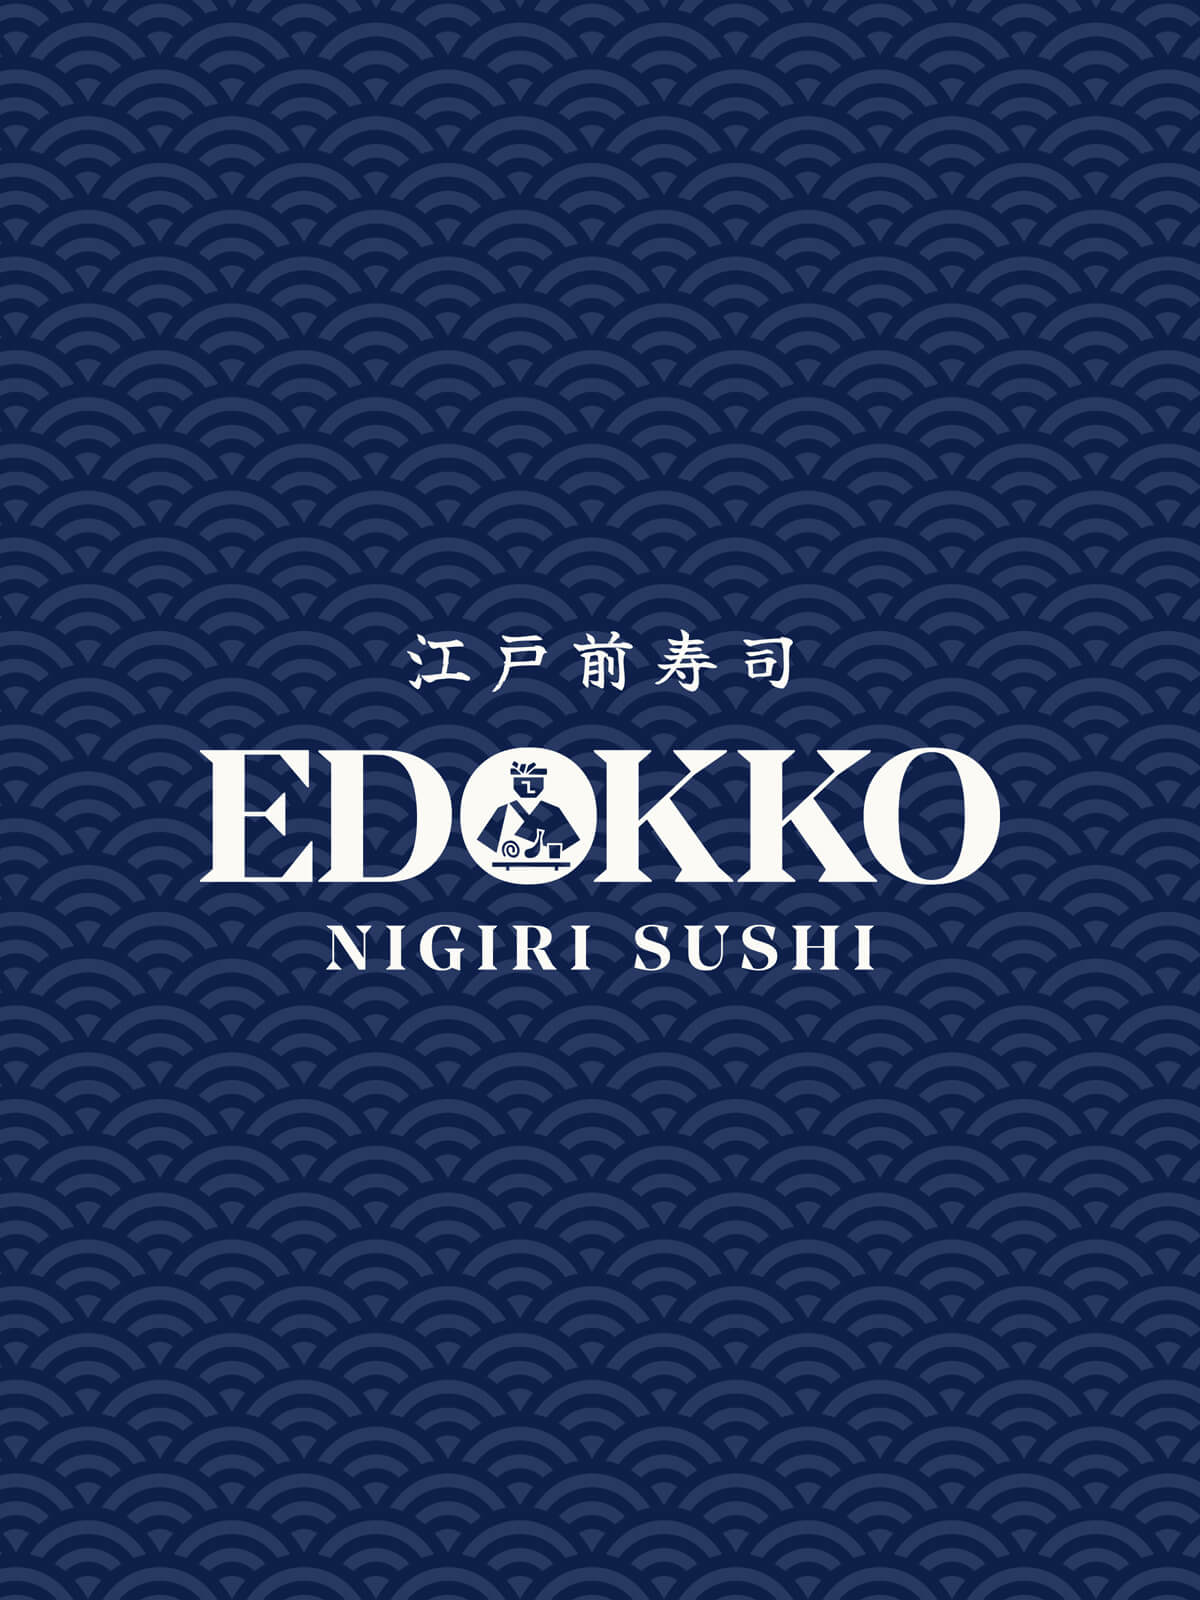 Edokko Nigiri Sushi Japanese Restaurant Gallery